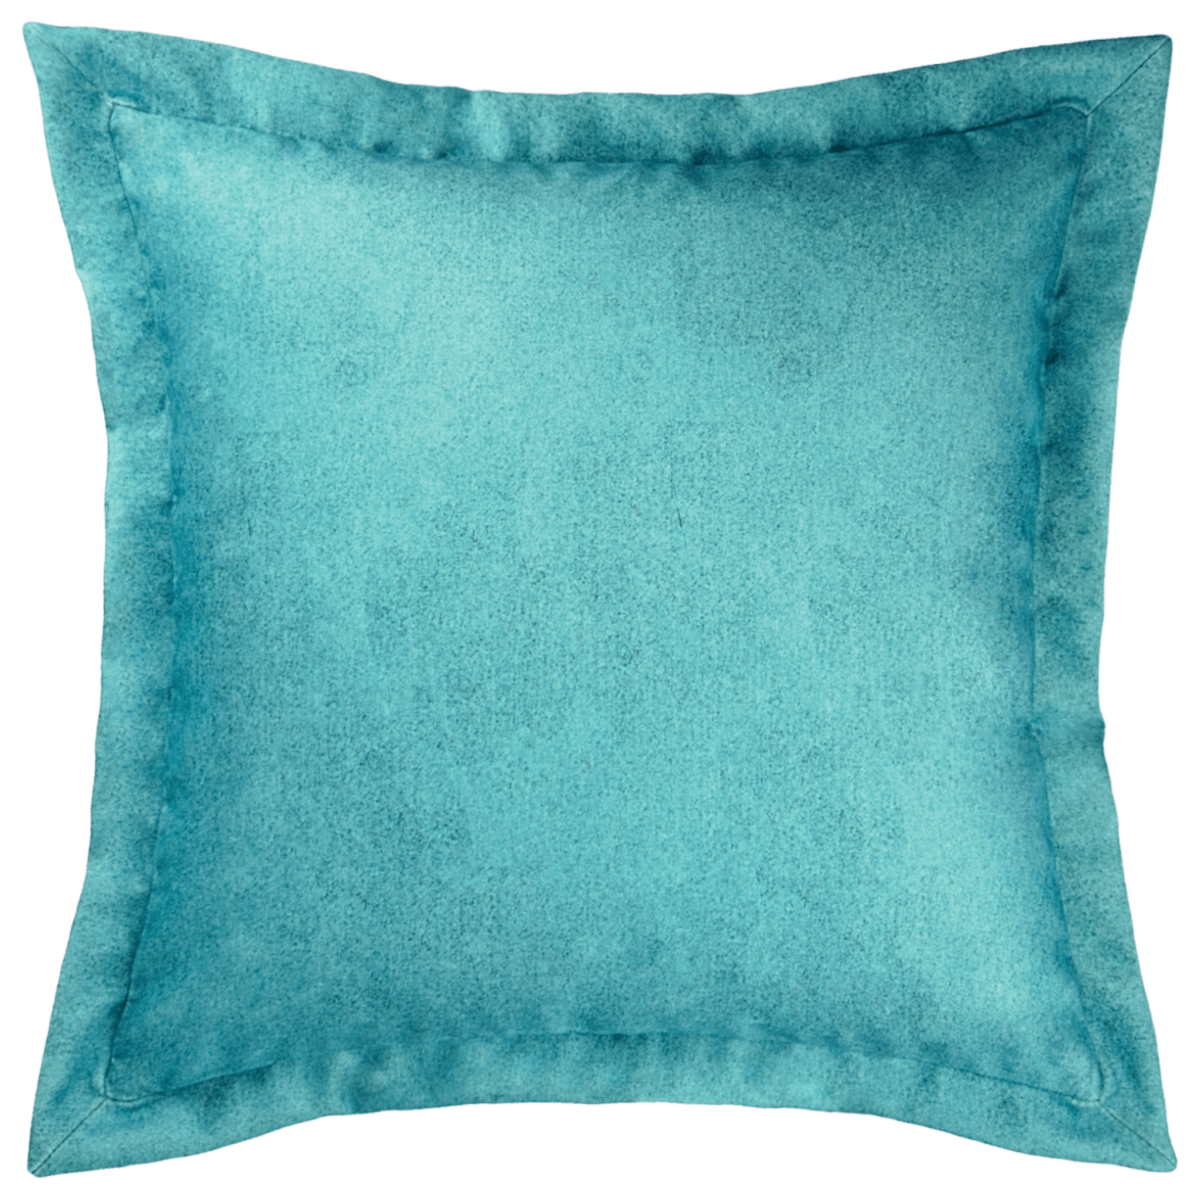 seagreen velvet pillow throw cover